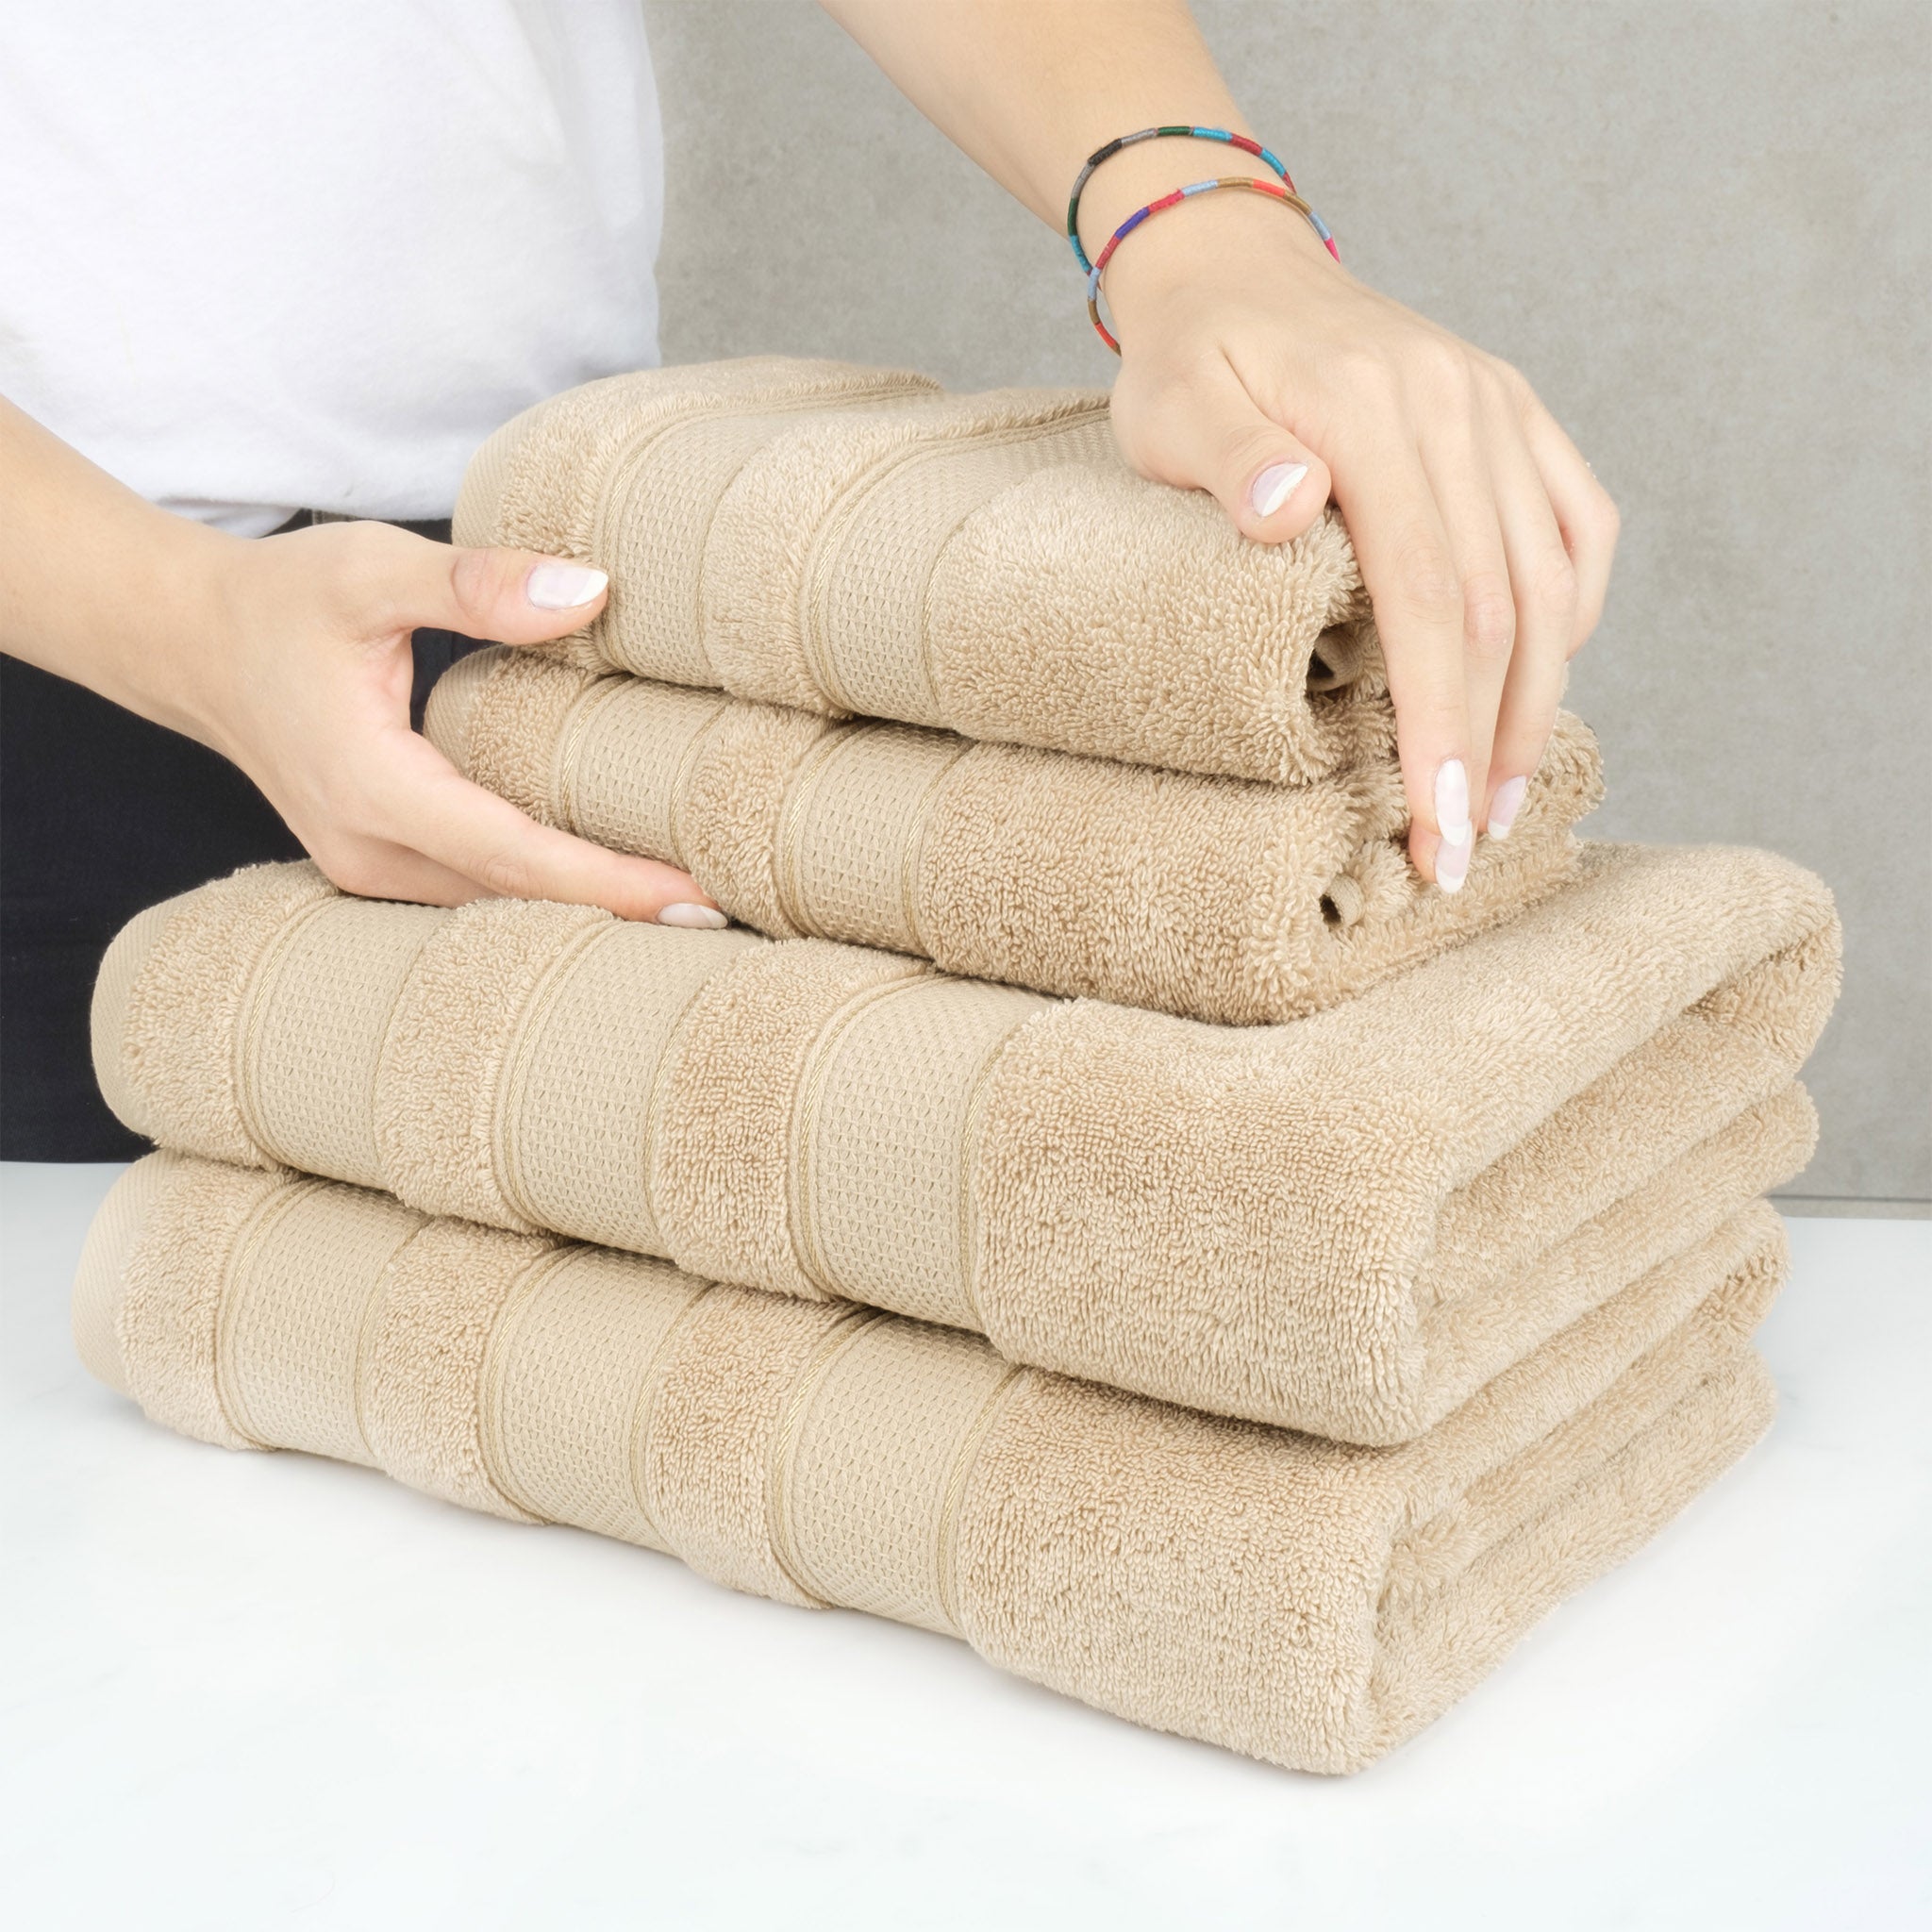 American Soft Linen Salem 6 Piece Towel Set, 100% Cotton Bath Towels for Bathroom, Sand Taupe